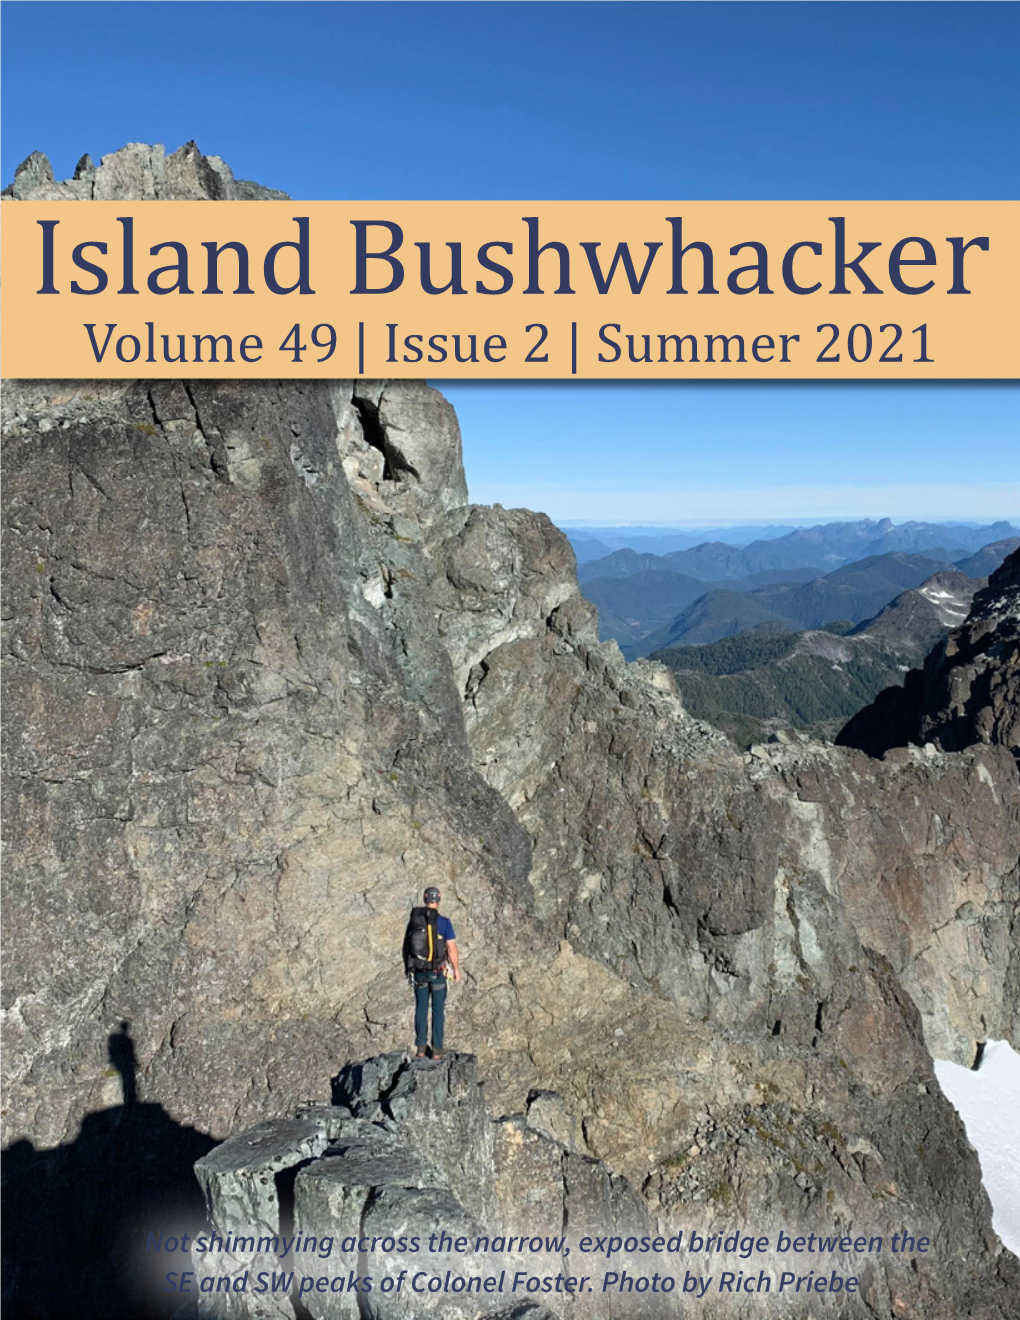 Island Bushwhacker Volume 49 | Issue 2 | Summer 2021